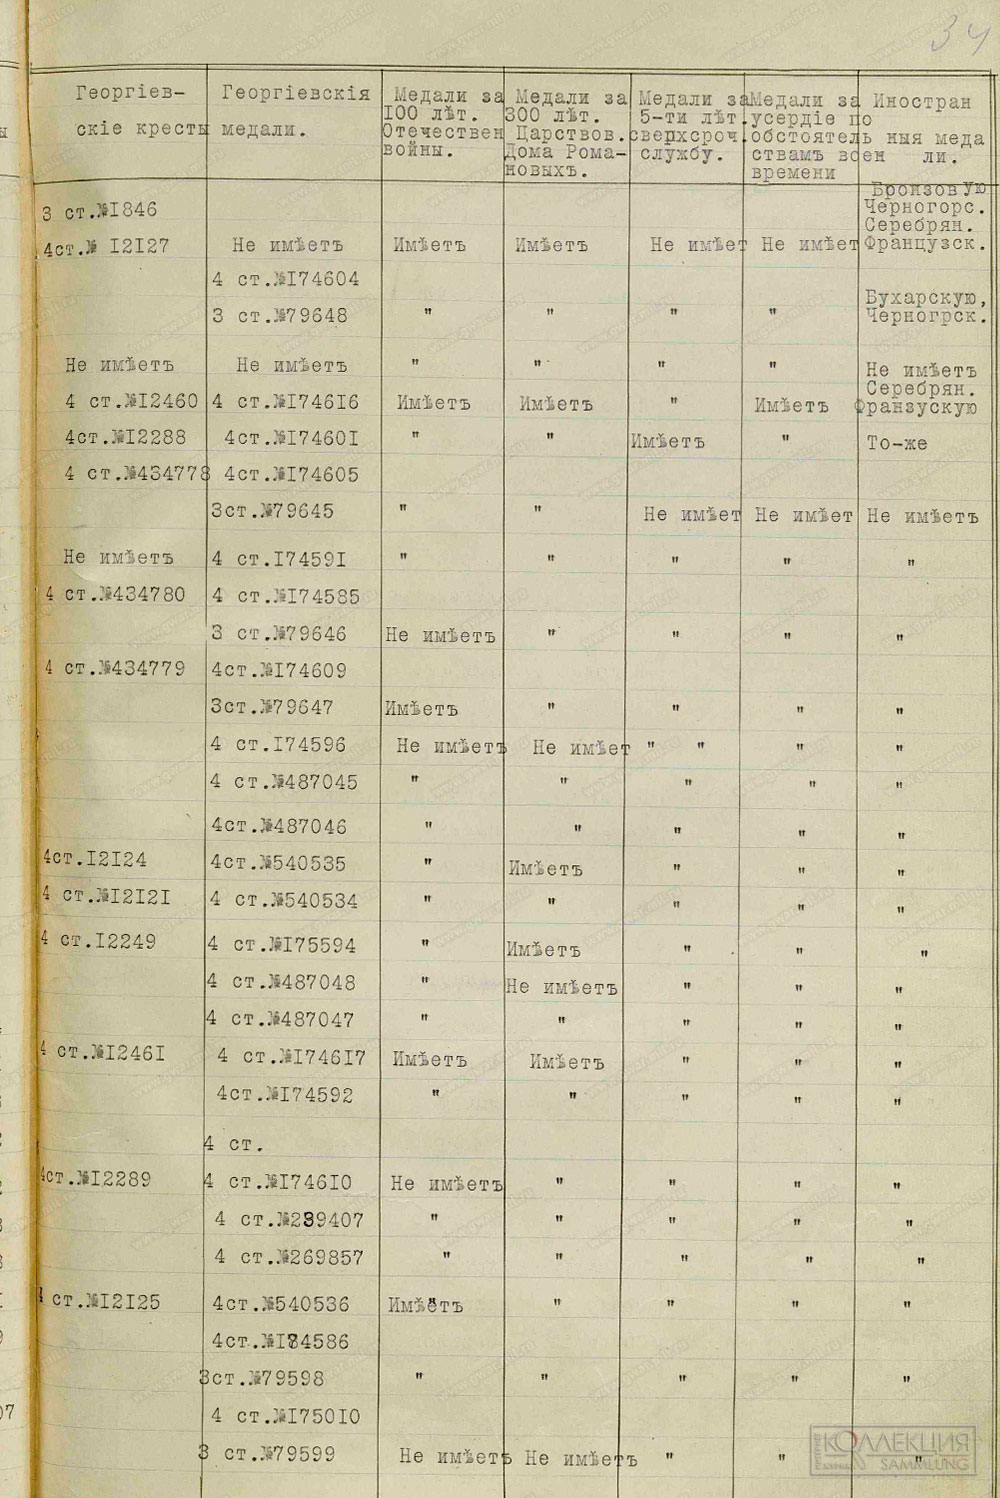 Документ со сведениями о наградах матросов эскадренных миноносцев, где указаны Бухарские медали